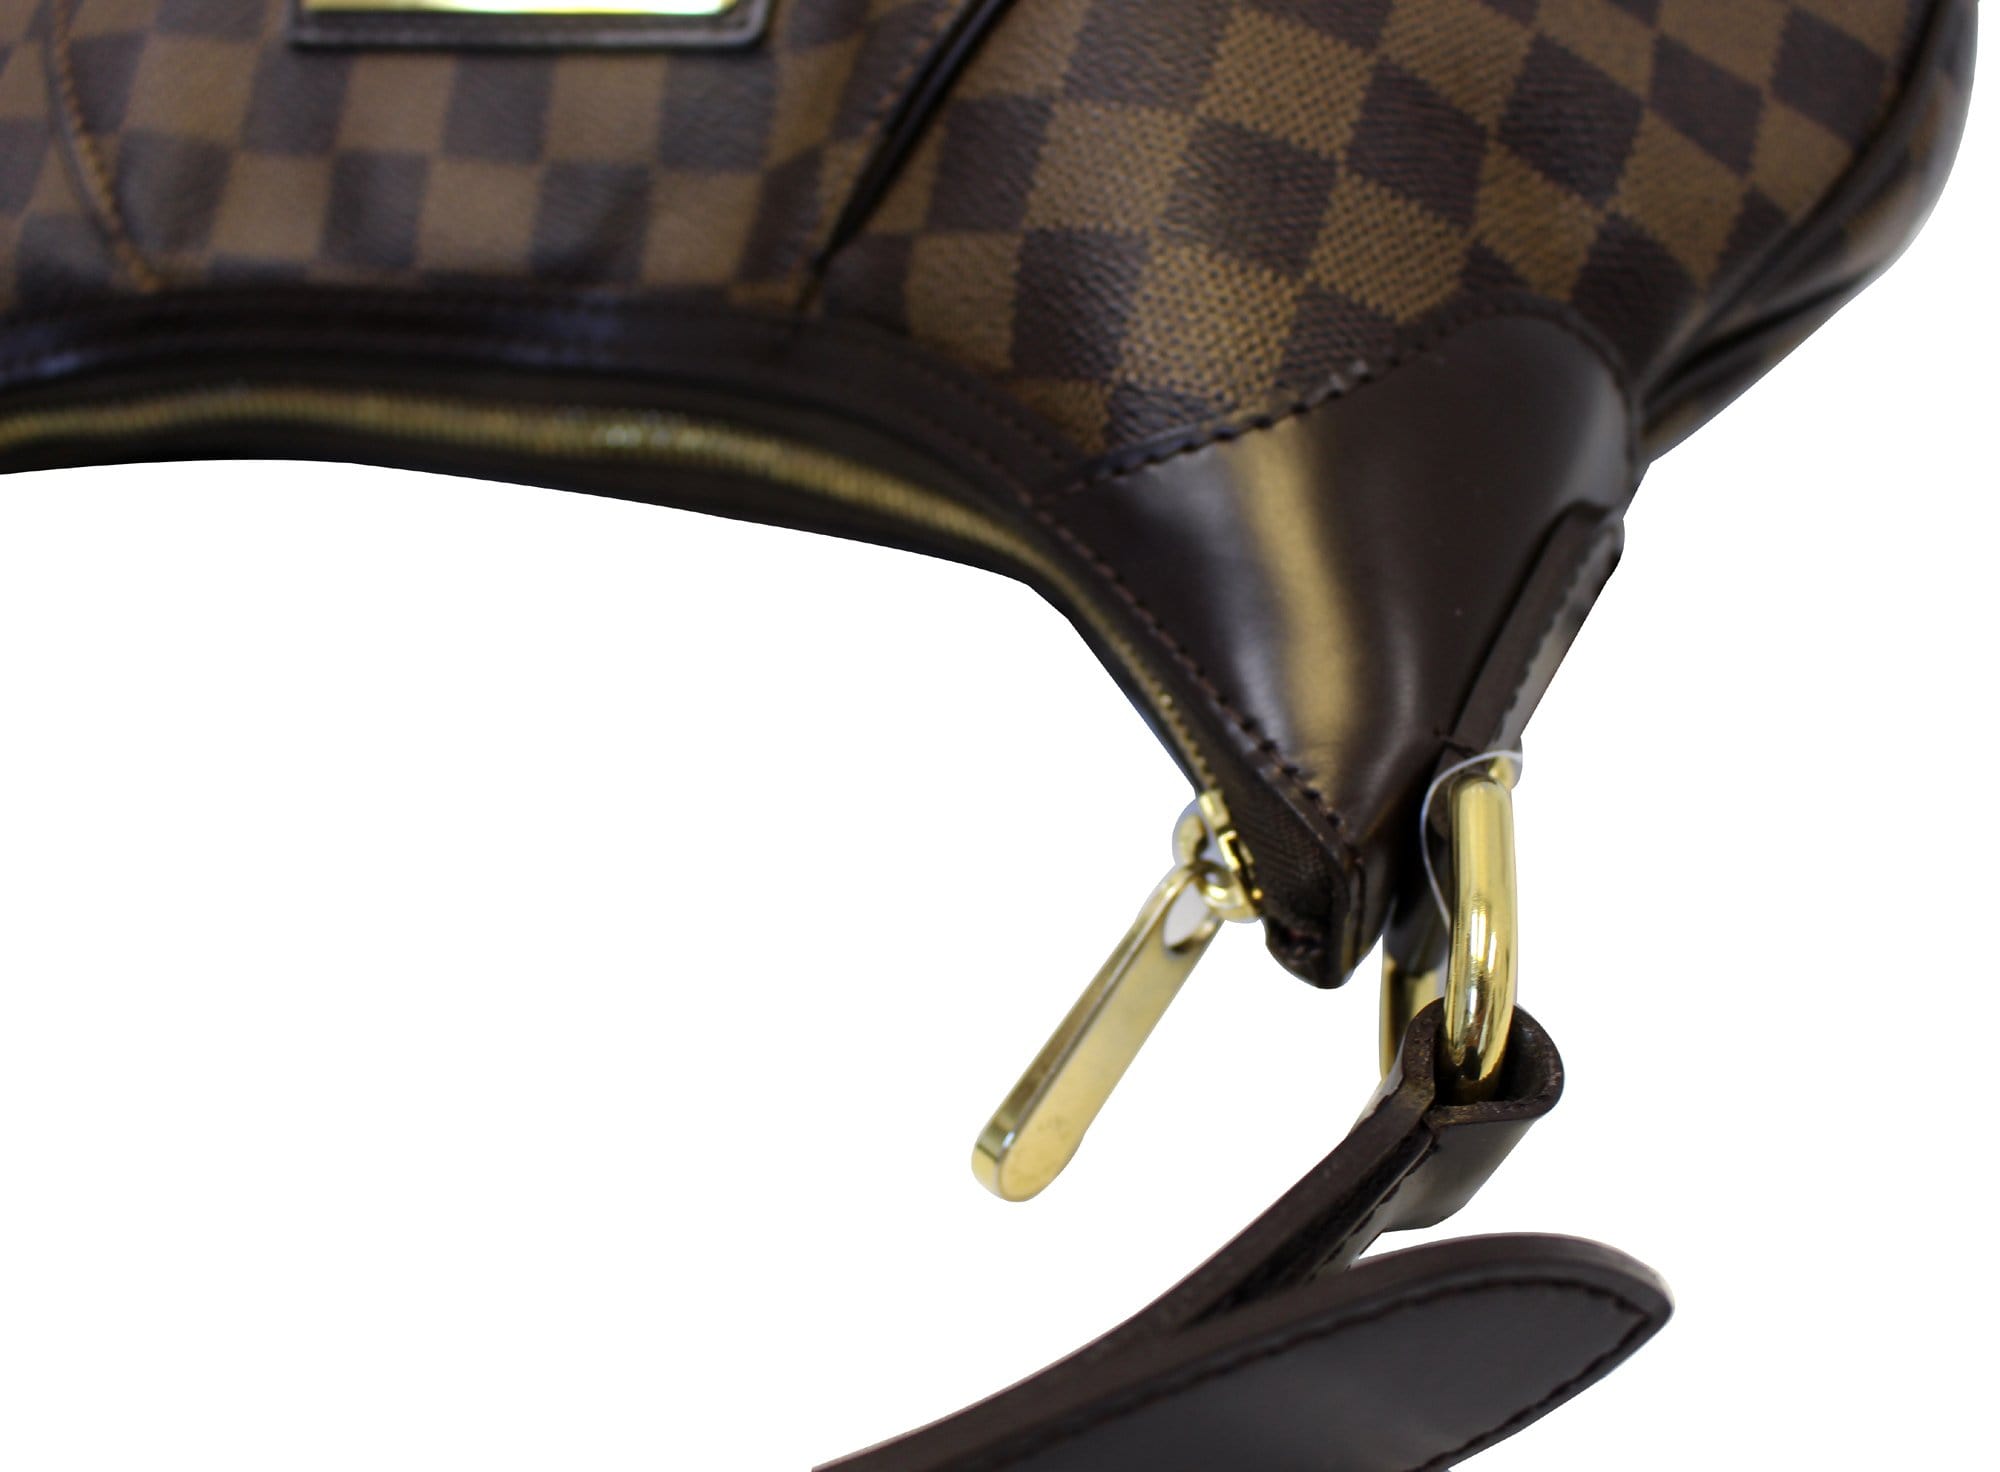 Louis Vuitton Damier Ebene Thames Gm Shoulder Bag Auction